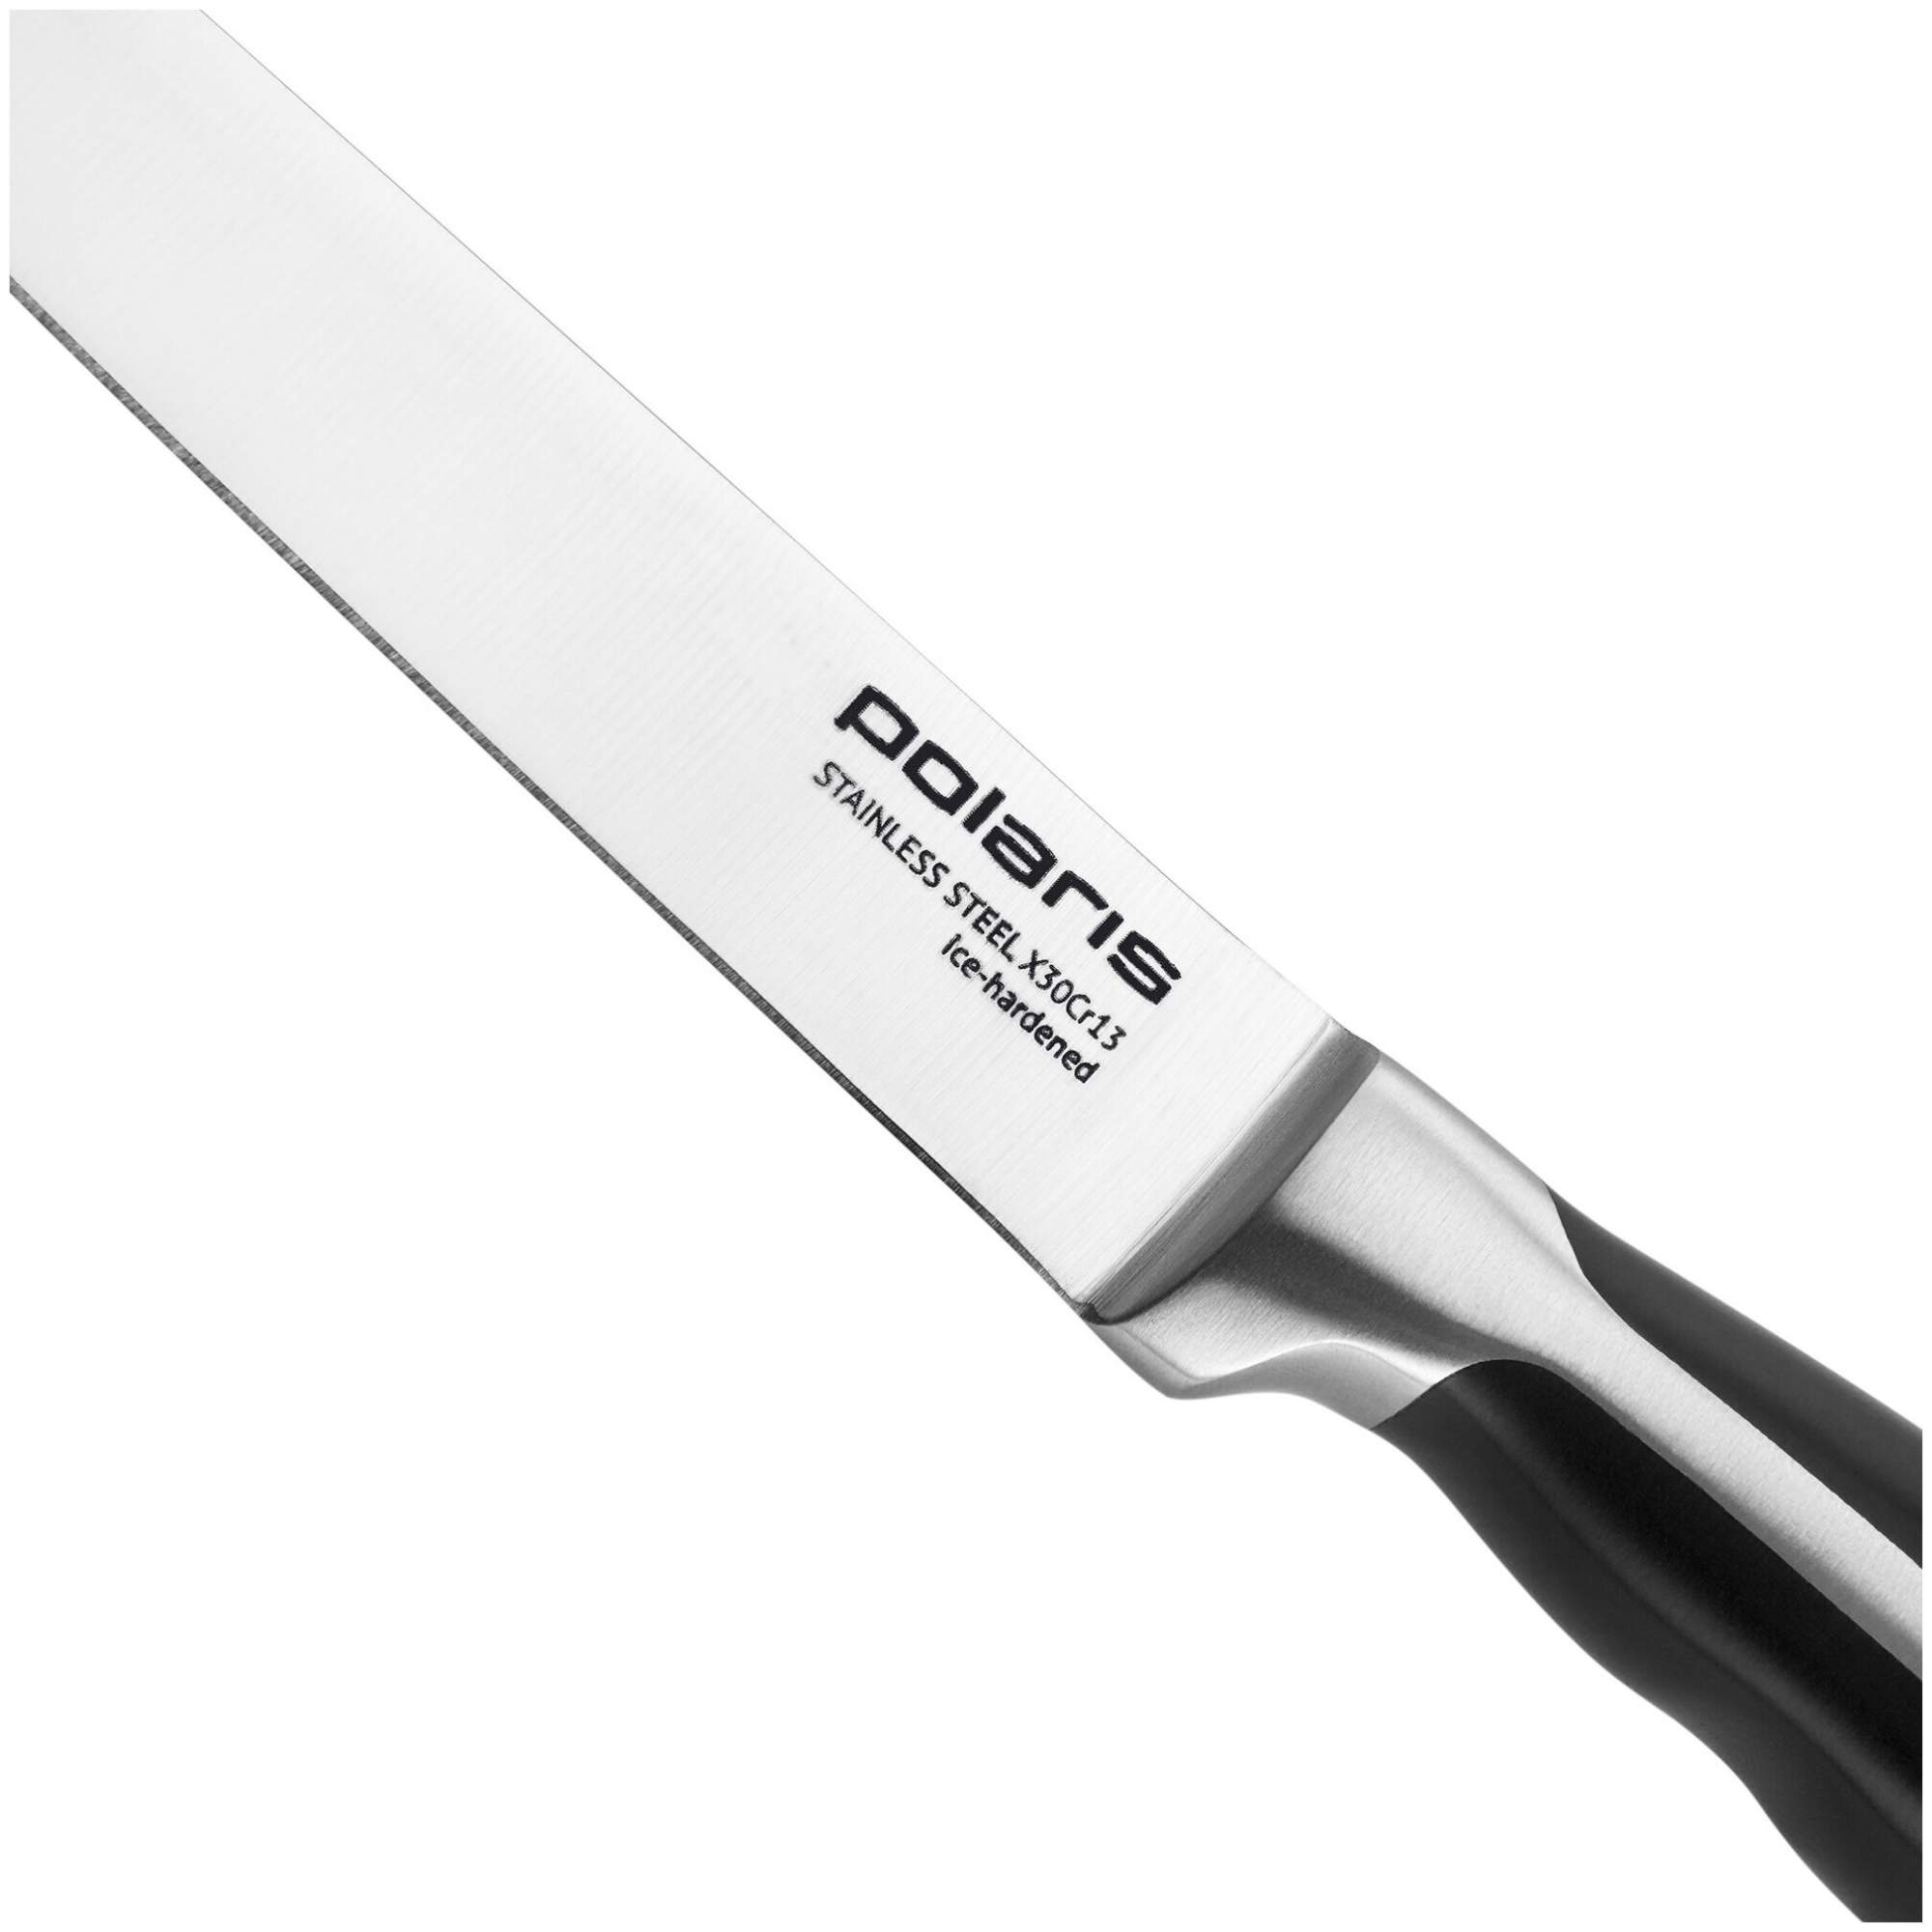 Ножи поларис купить. Polaris Millennium-3ss. Набор ножей Поларис. Ножи Поларис 3ss. Набор ножей Solid-3ss нерж. Сталь, 3 пред. (Polaris) , черный.